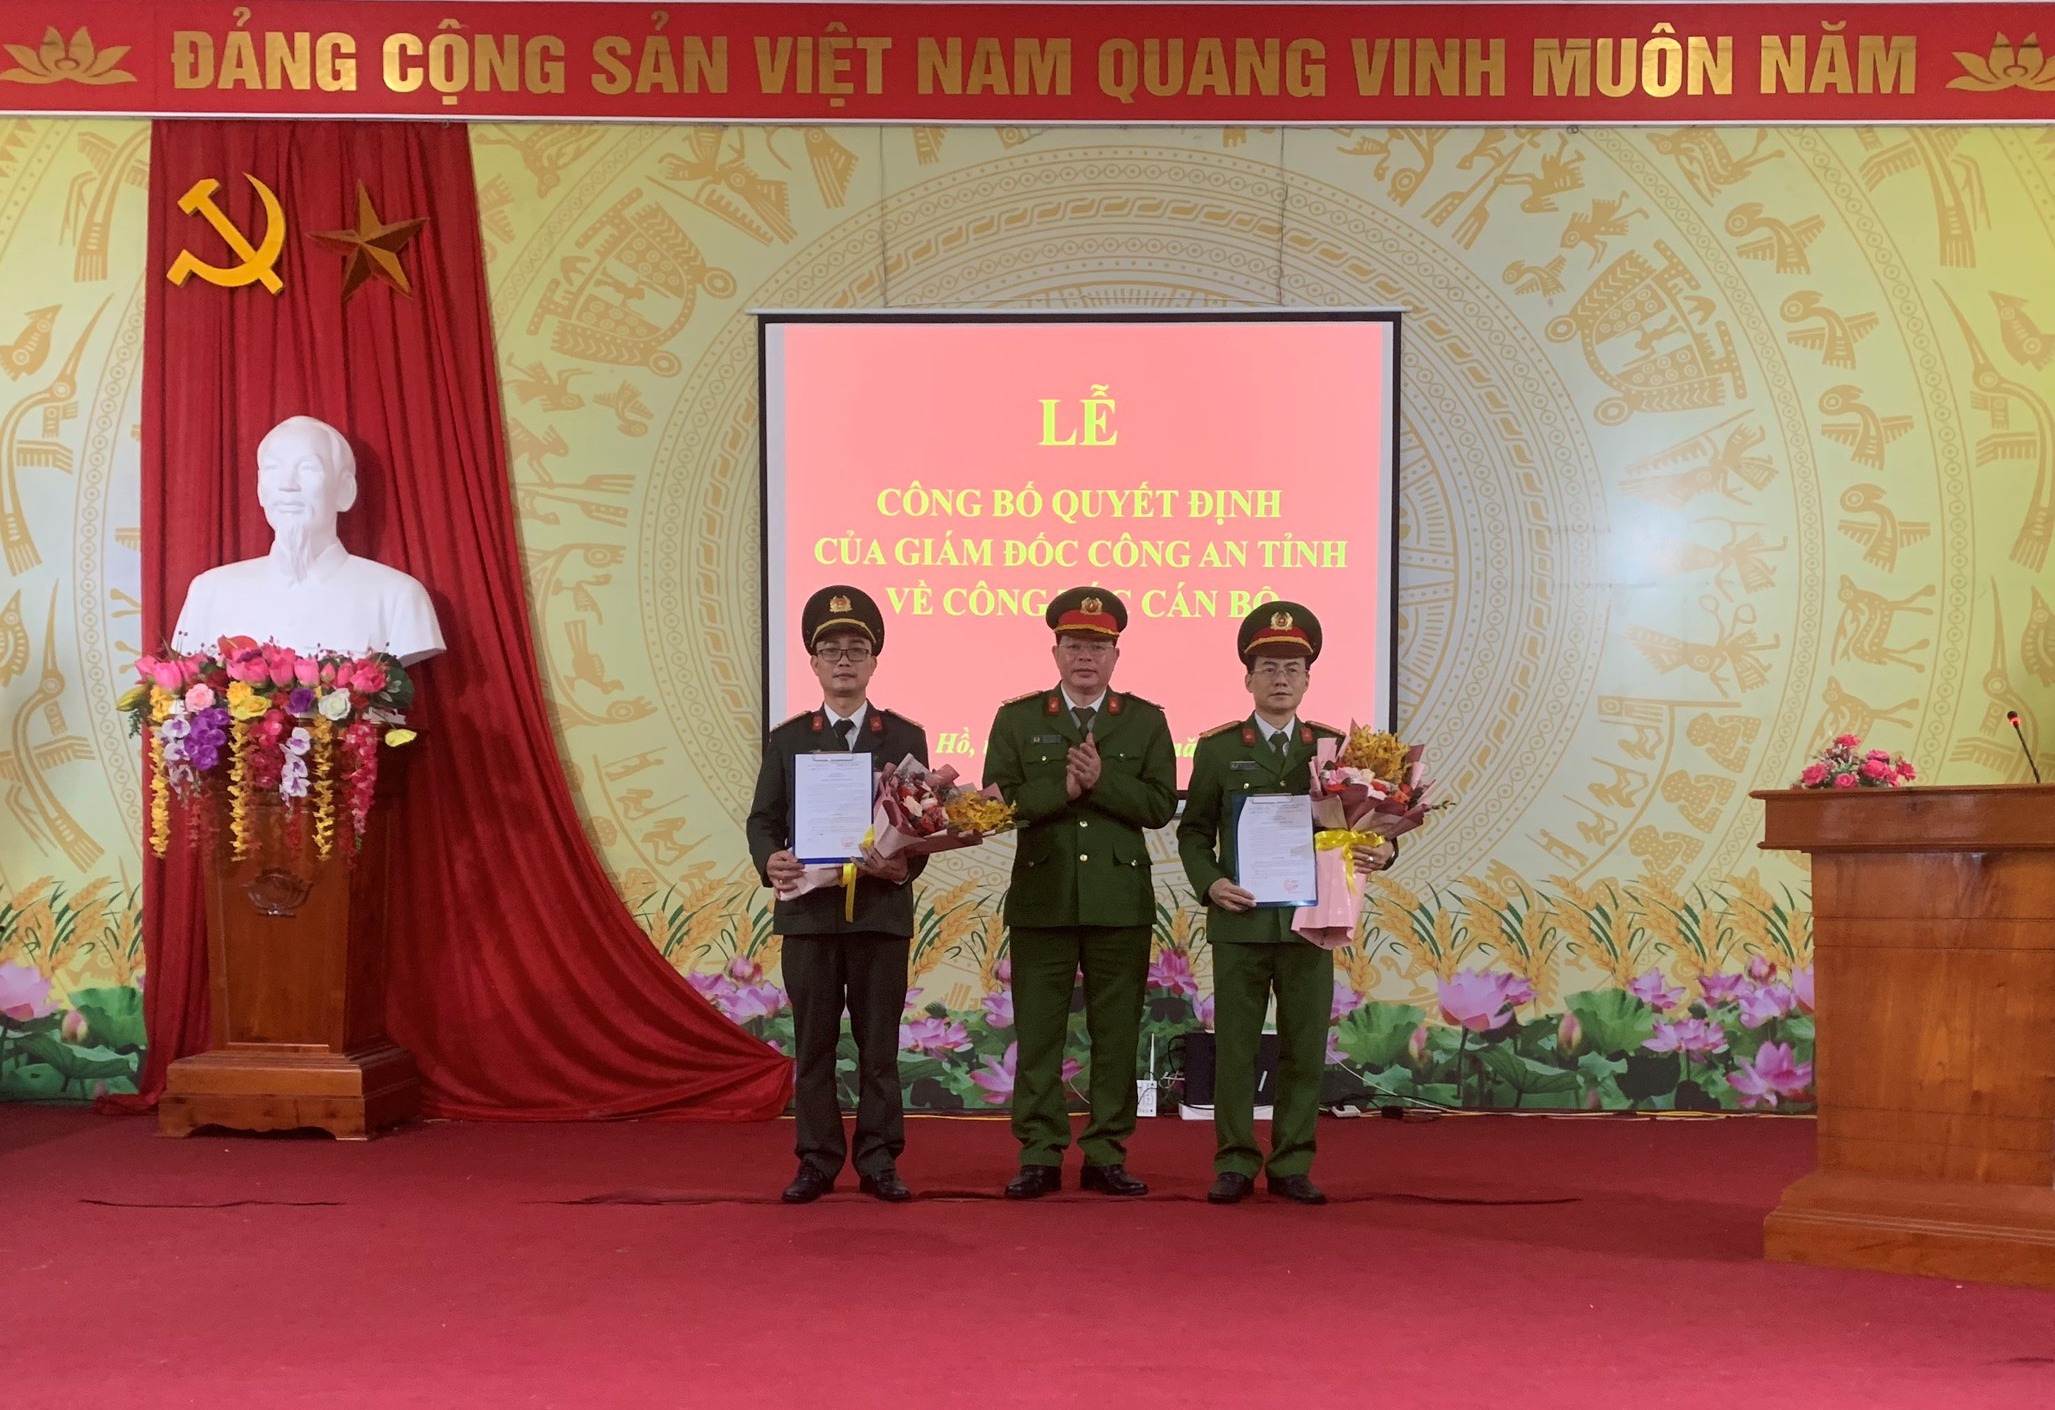 Công bố Quyết định của Giám đốc Công an tỉnh về công tác cán bộ tại xã Linh Hồ